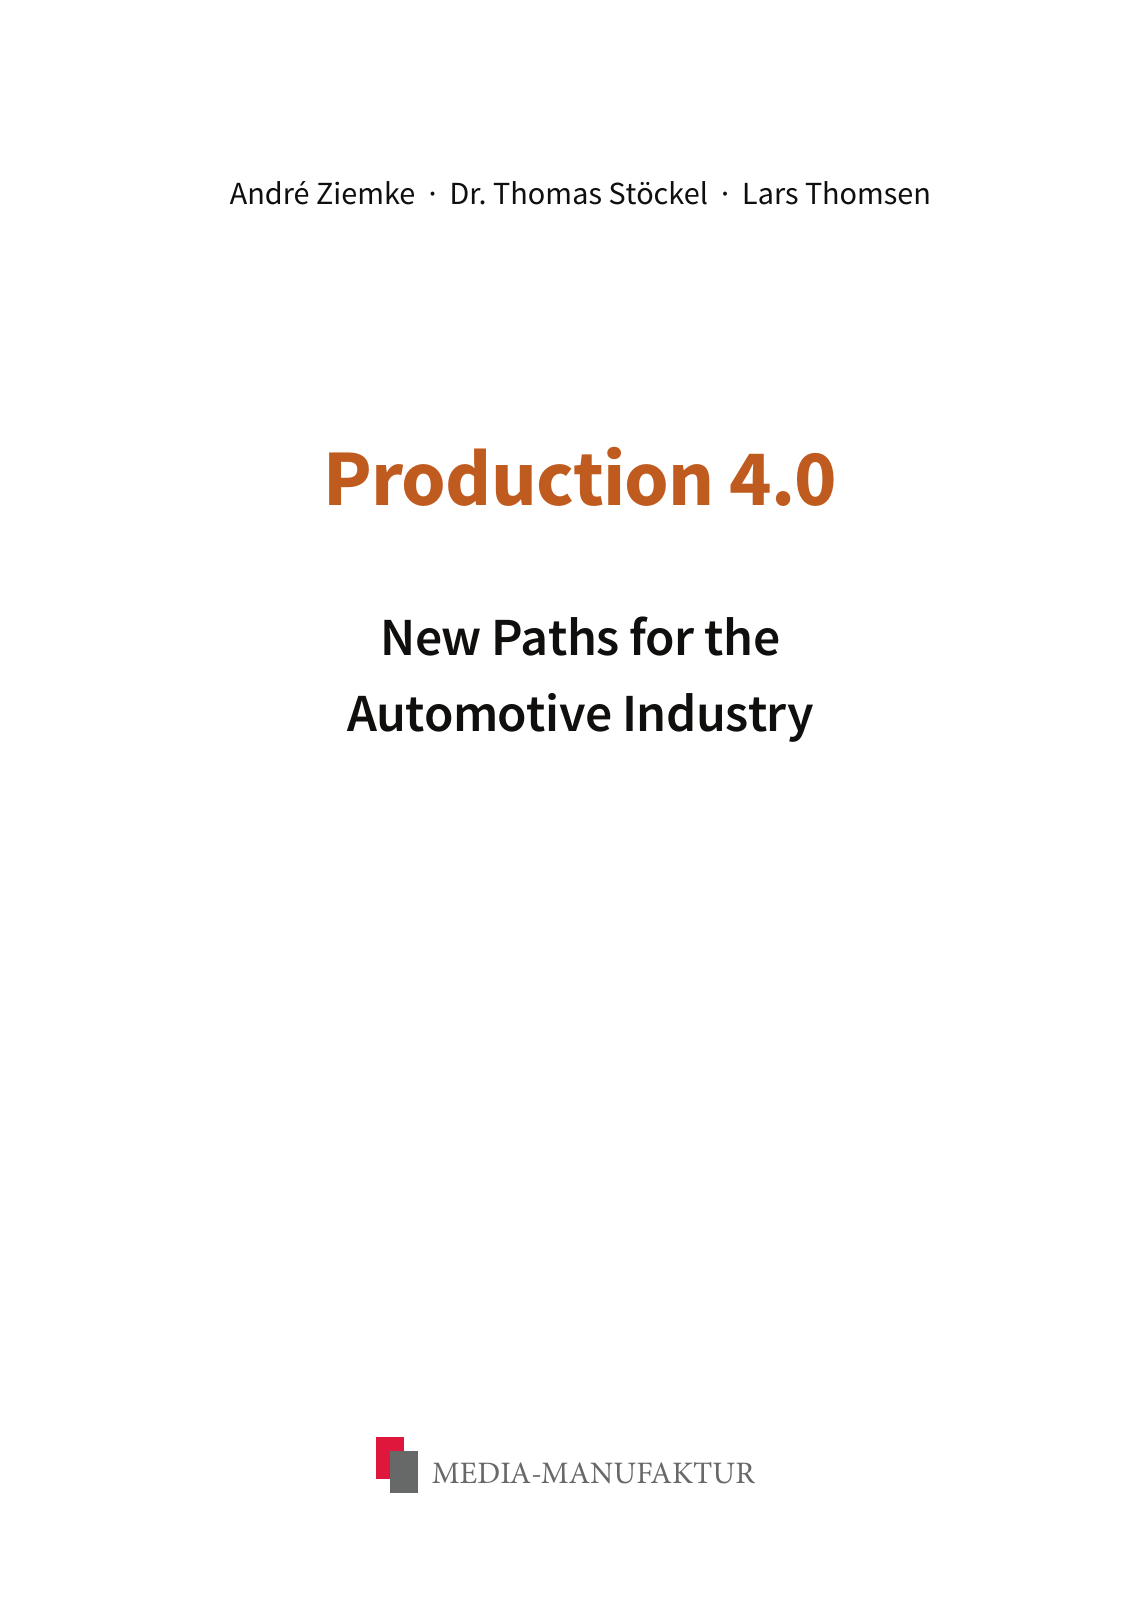 Vorschau Production 4.0_Sample Seite 2